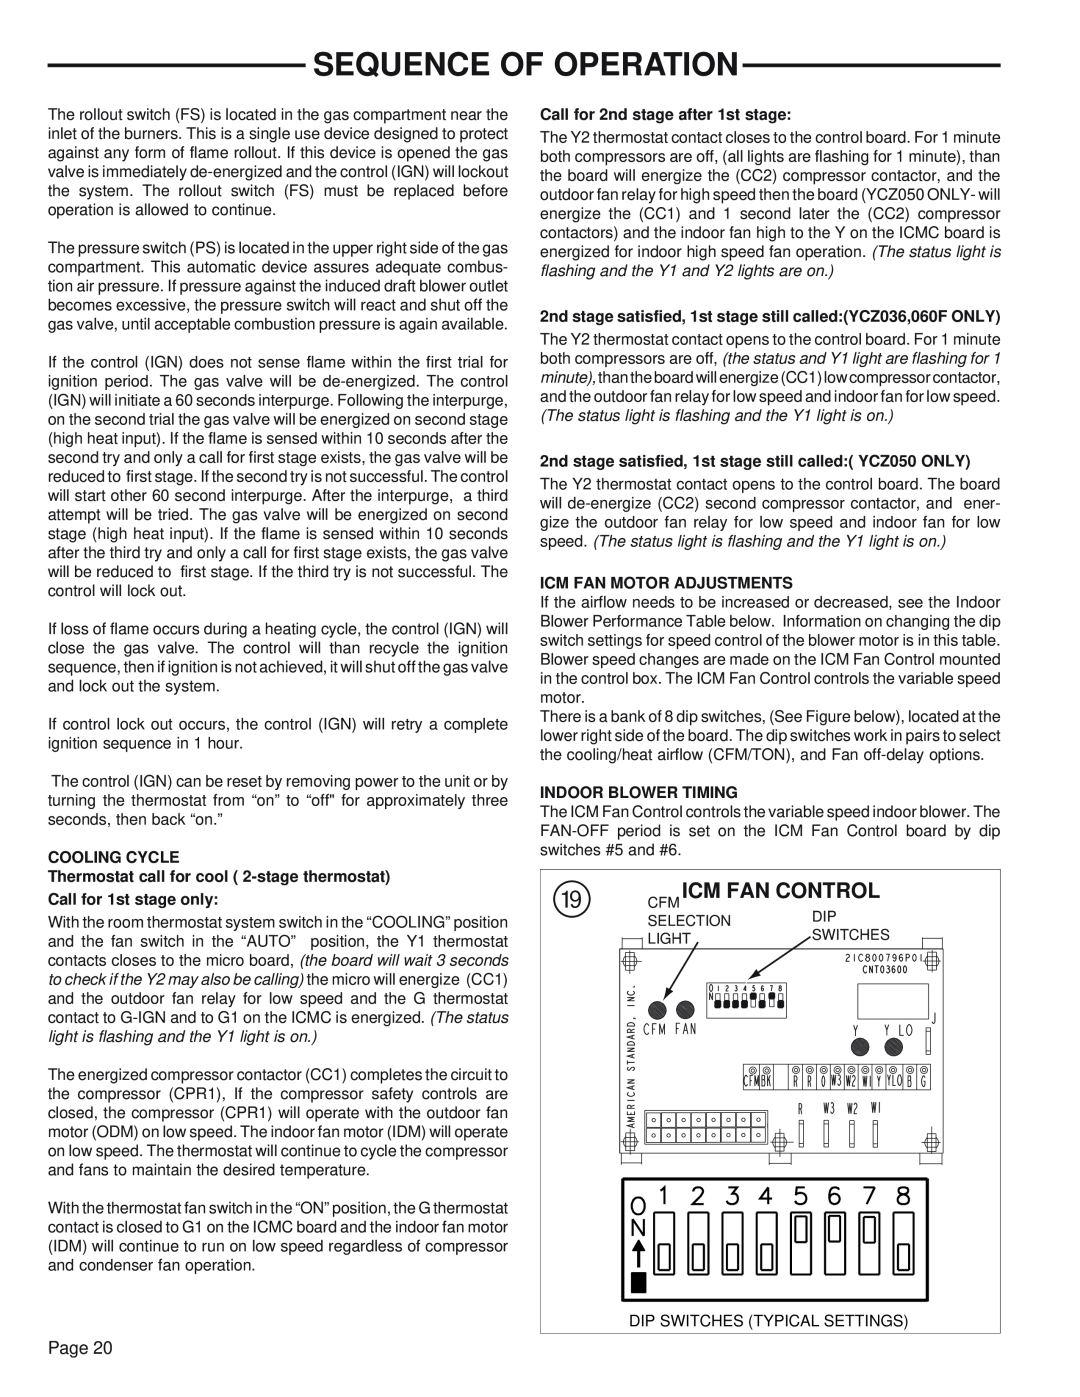 Trane YCZ035F1, YCZ036F1/3M0B manual o CFM ICM FAN CONTROLDIP, Sequence Of Operation 